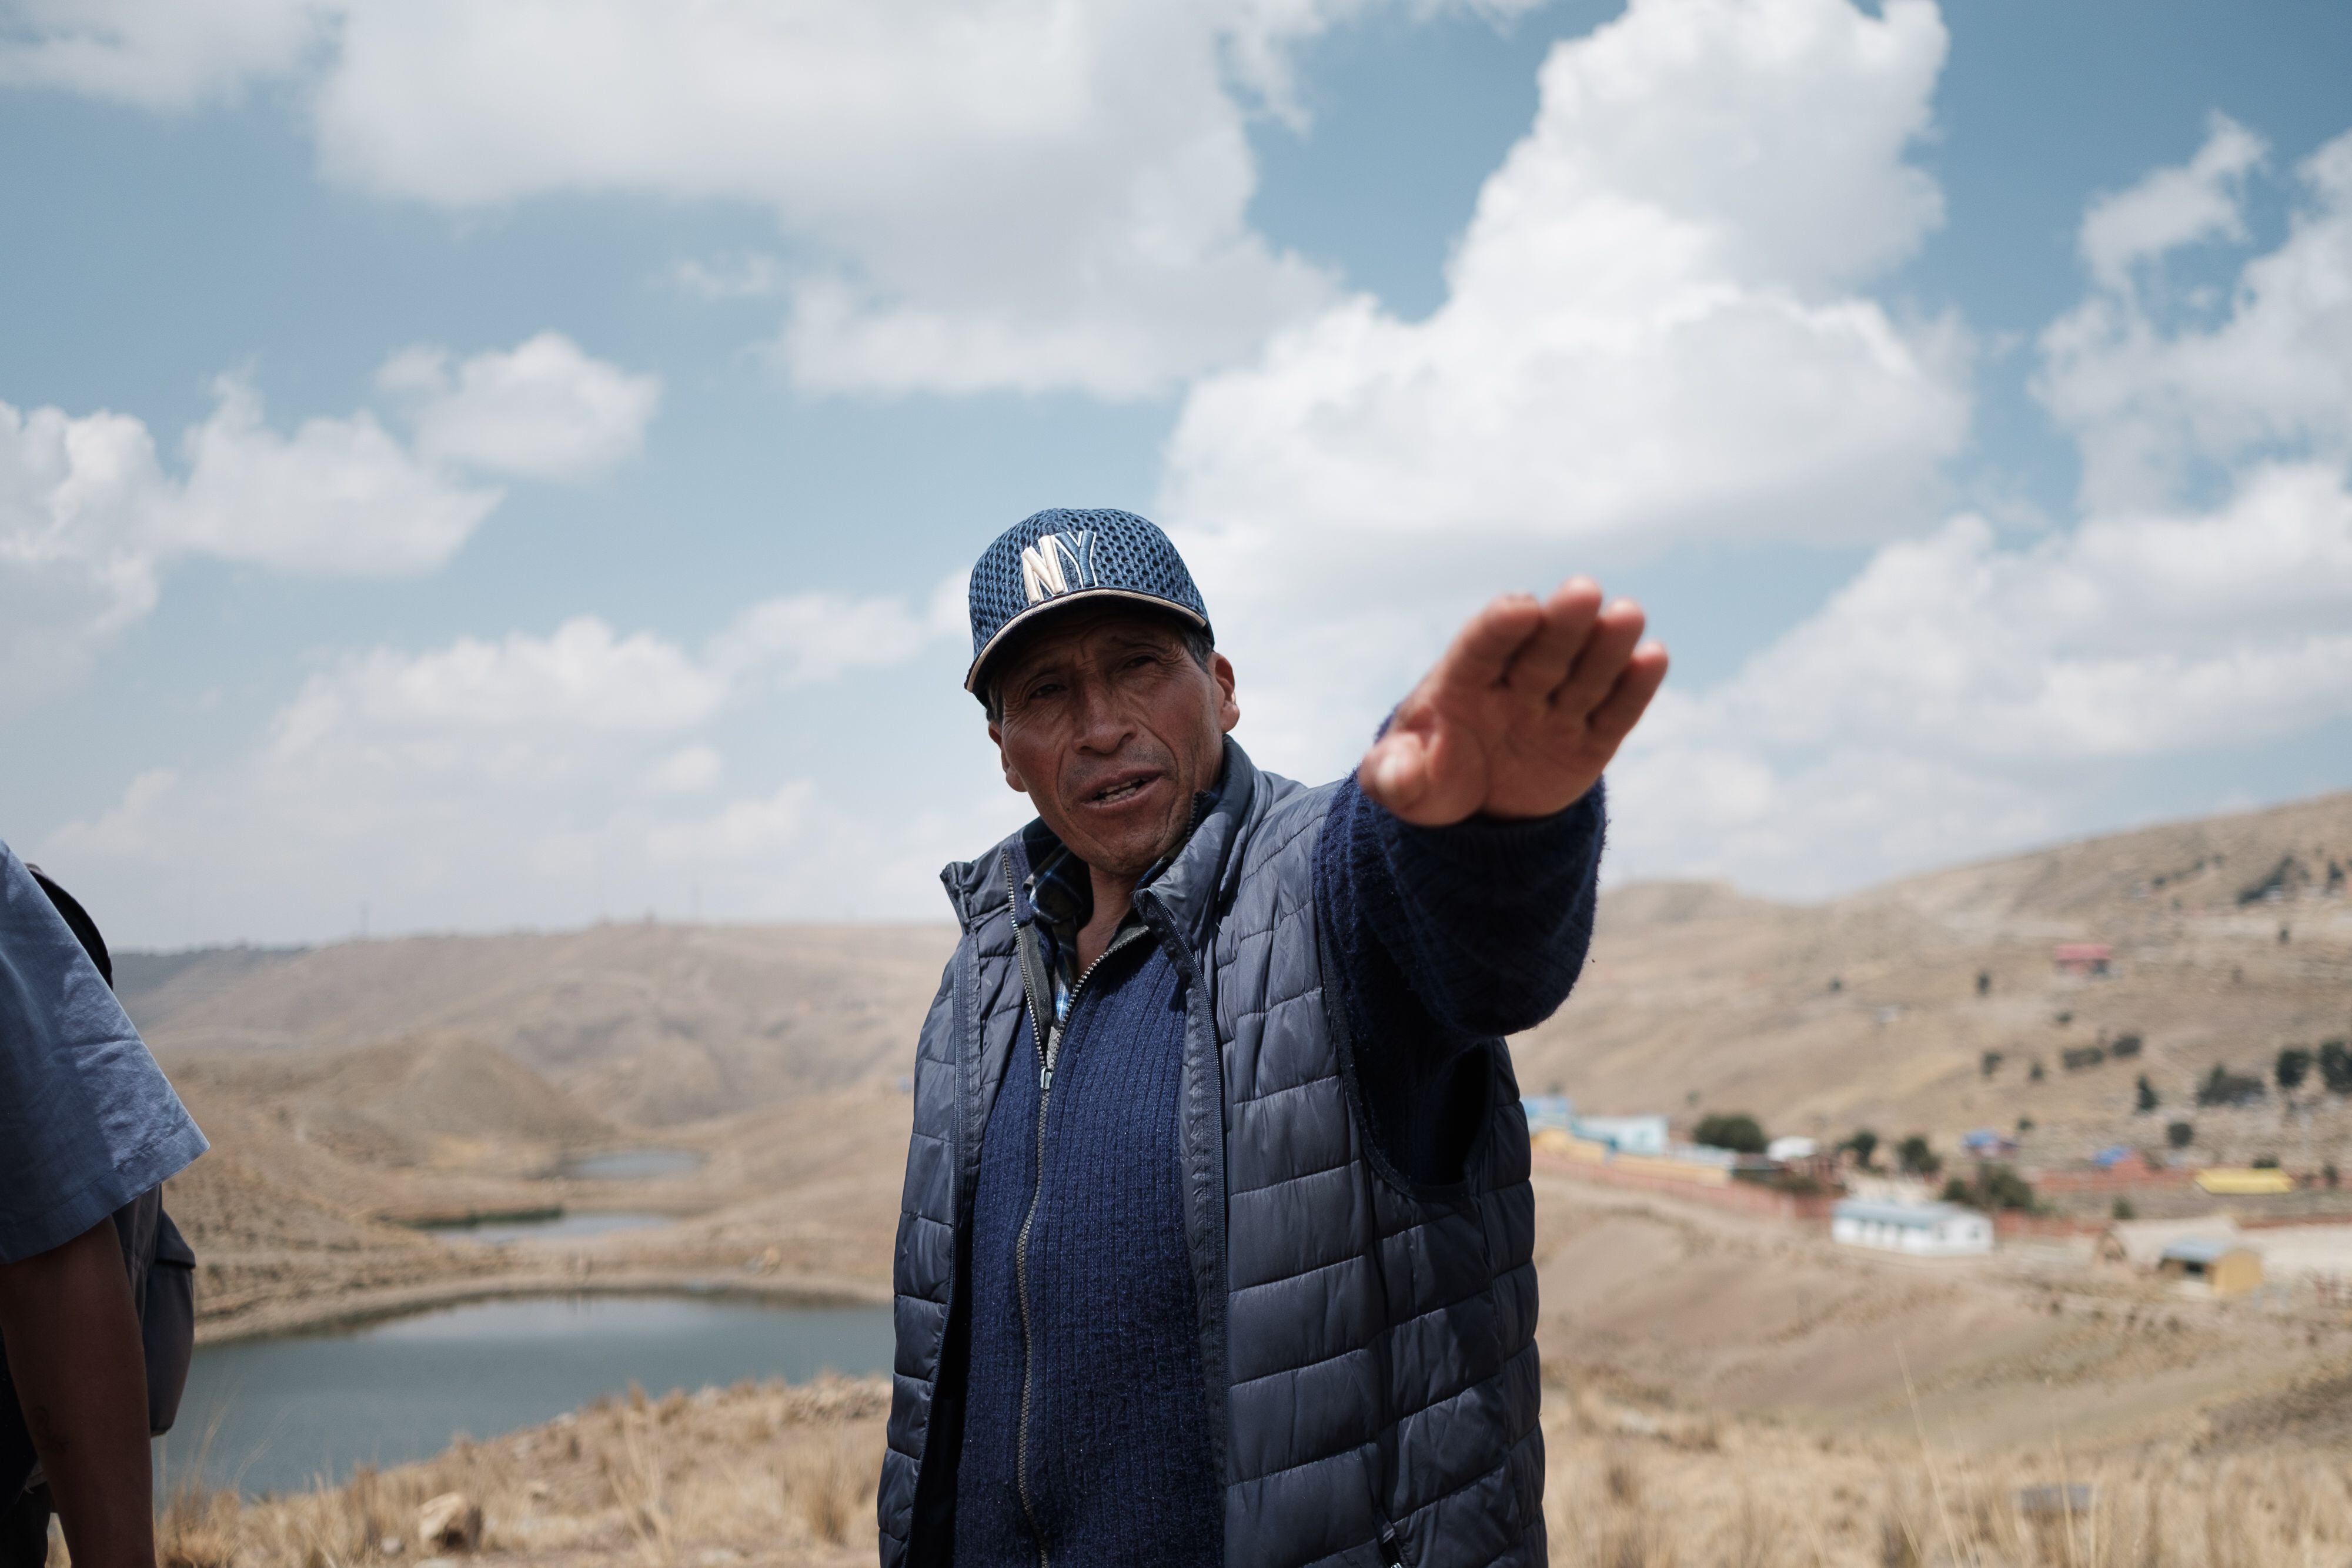 Erasmo Persona, habitante de la comunidad de Siete Lagunas, en el altiplano boliviano, conversa sobre la sequía que afecta al lugar, con tres de las lagunas que dan nombre a la comunidad a sus espaldas.